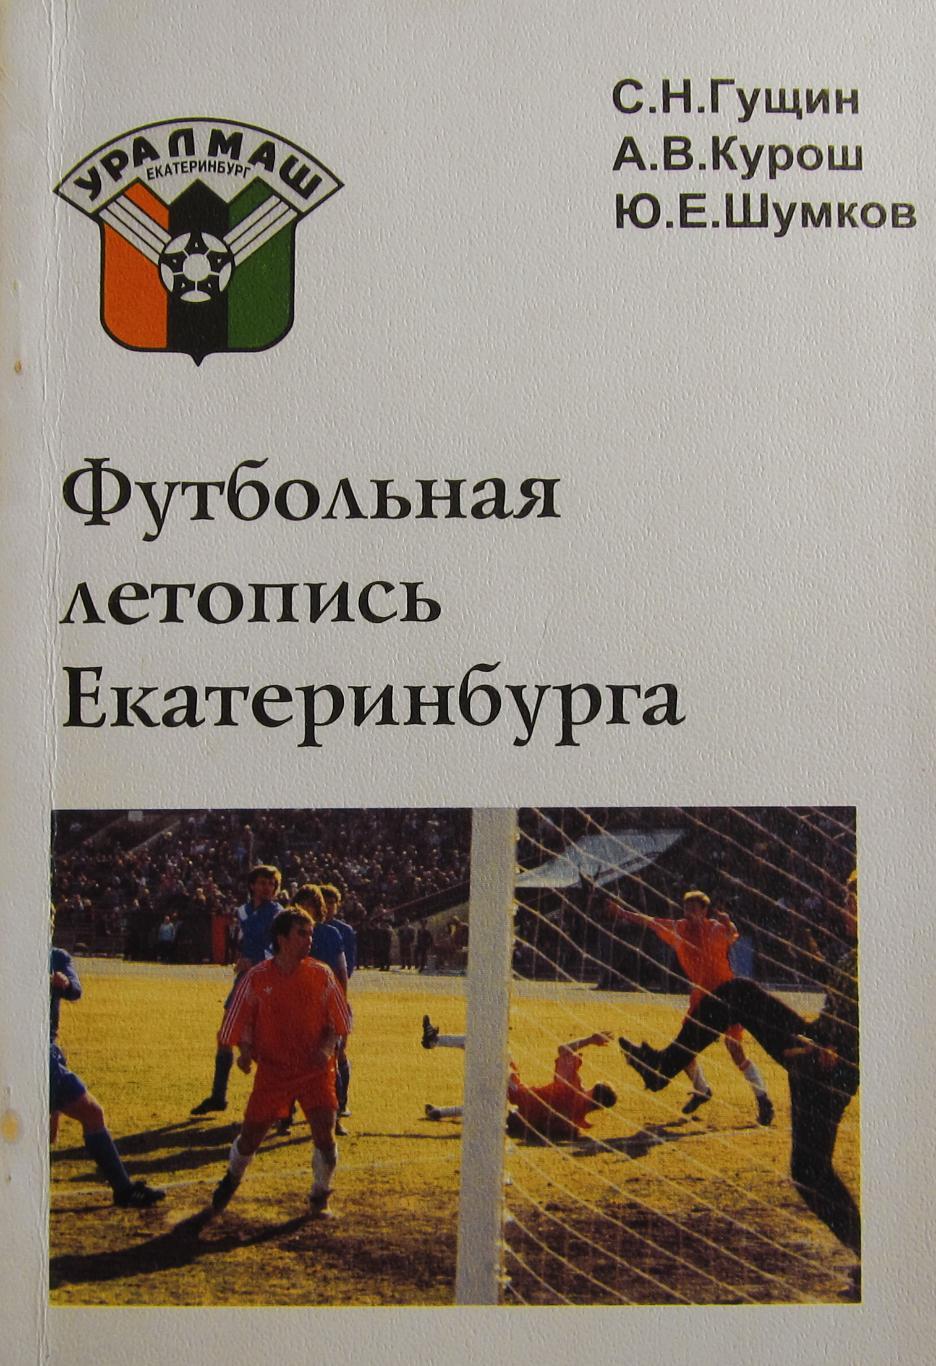 Футбольная летопись Екатеринбурга. Гущин С.Н., 1996 год издания.